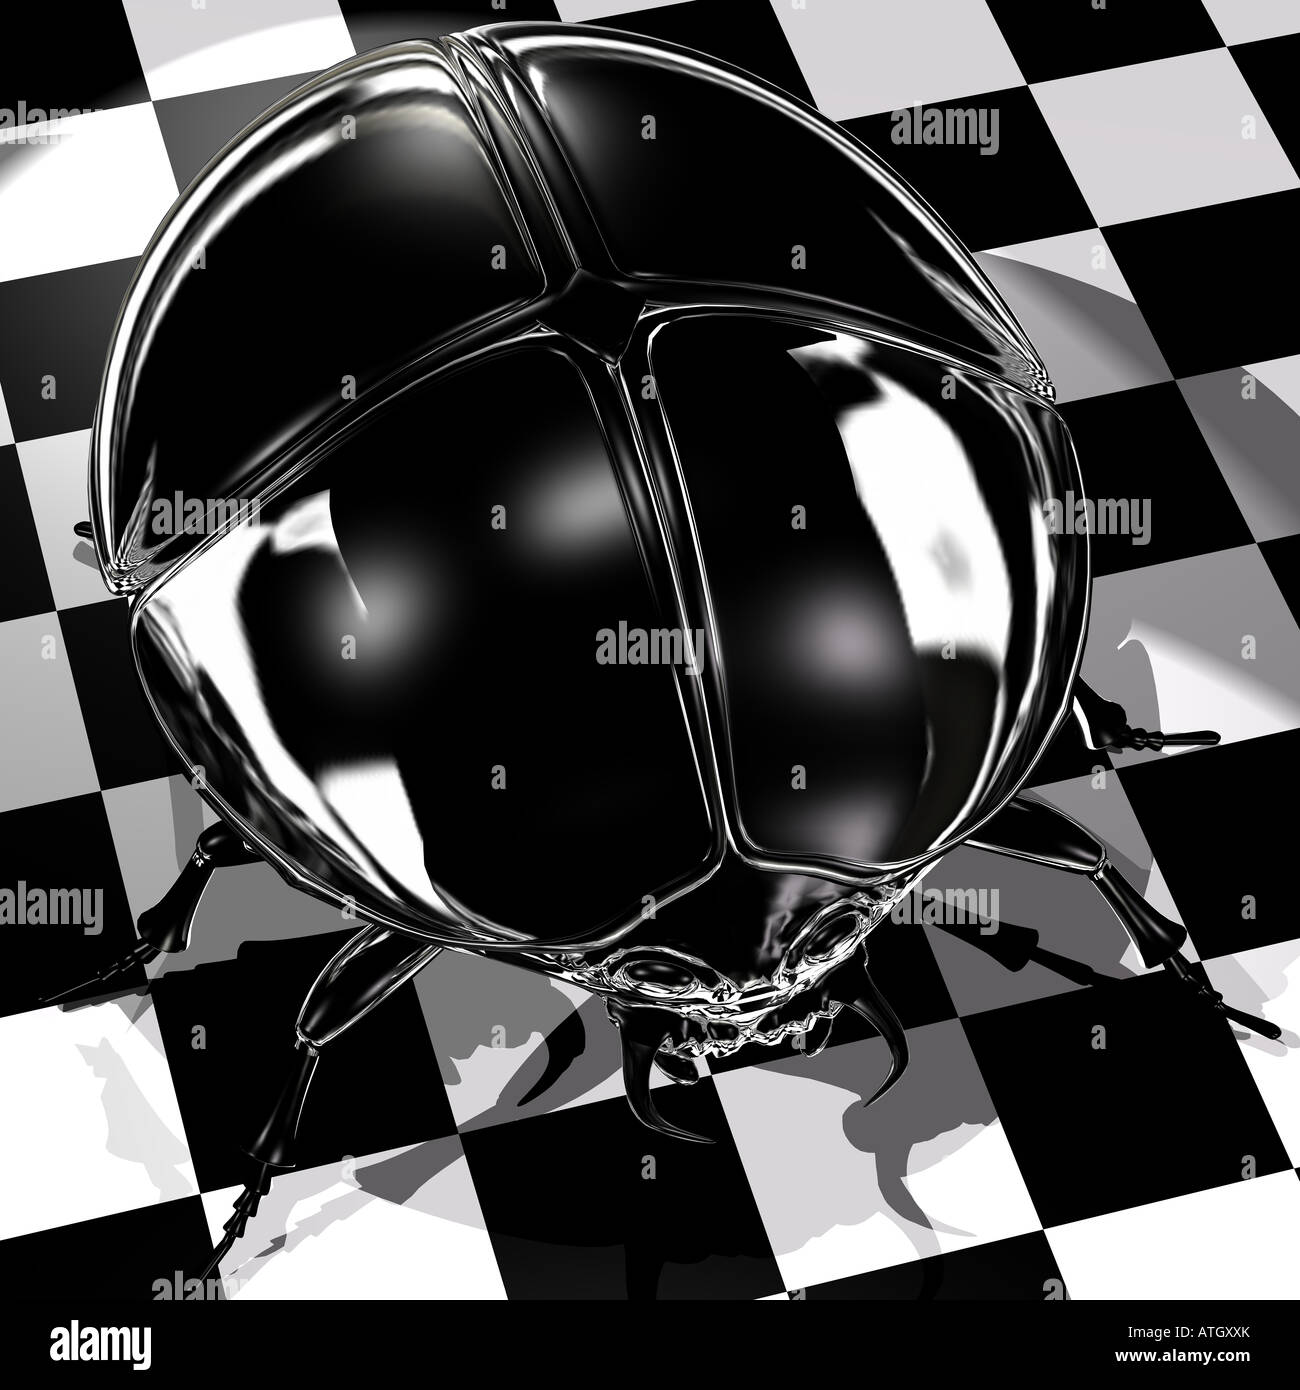 Negro, brillante y un escarabajo de ajedrez como fondo cuadriculado blanco/negro Foto de stock